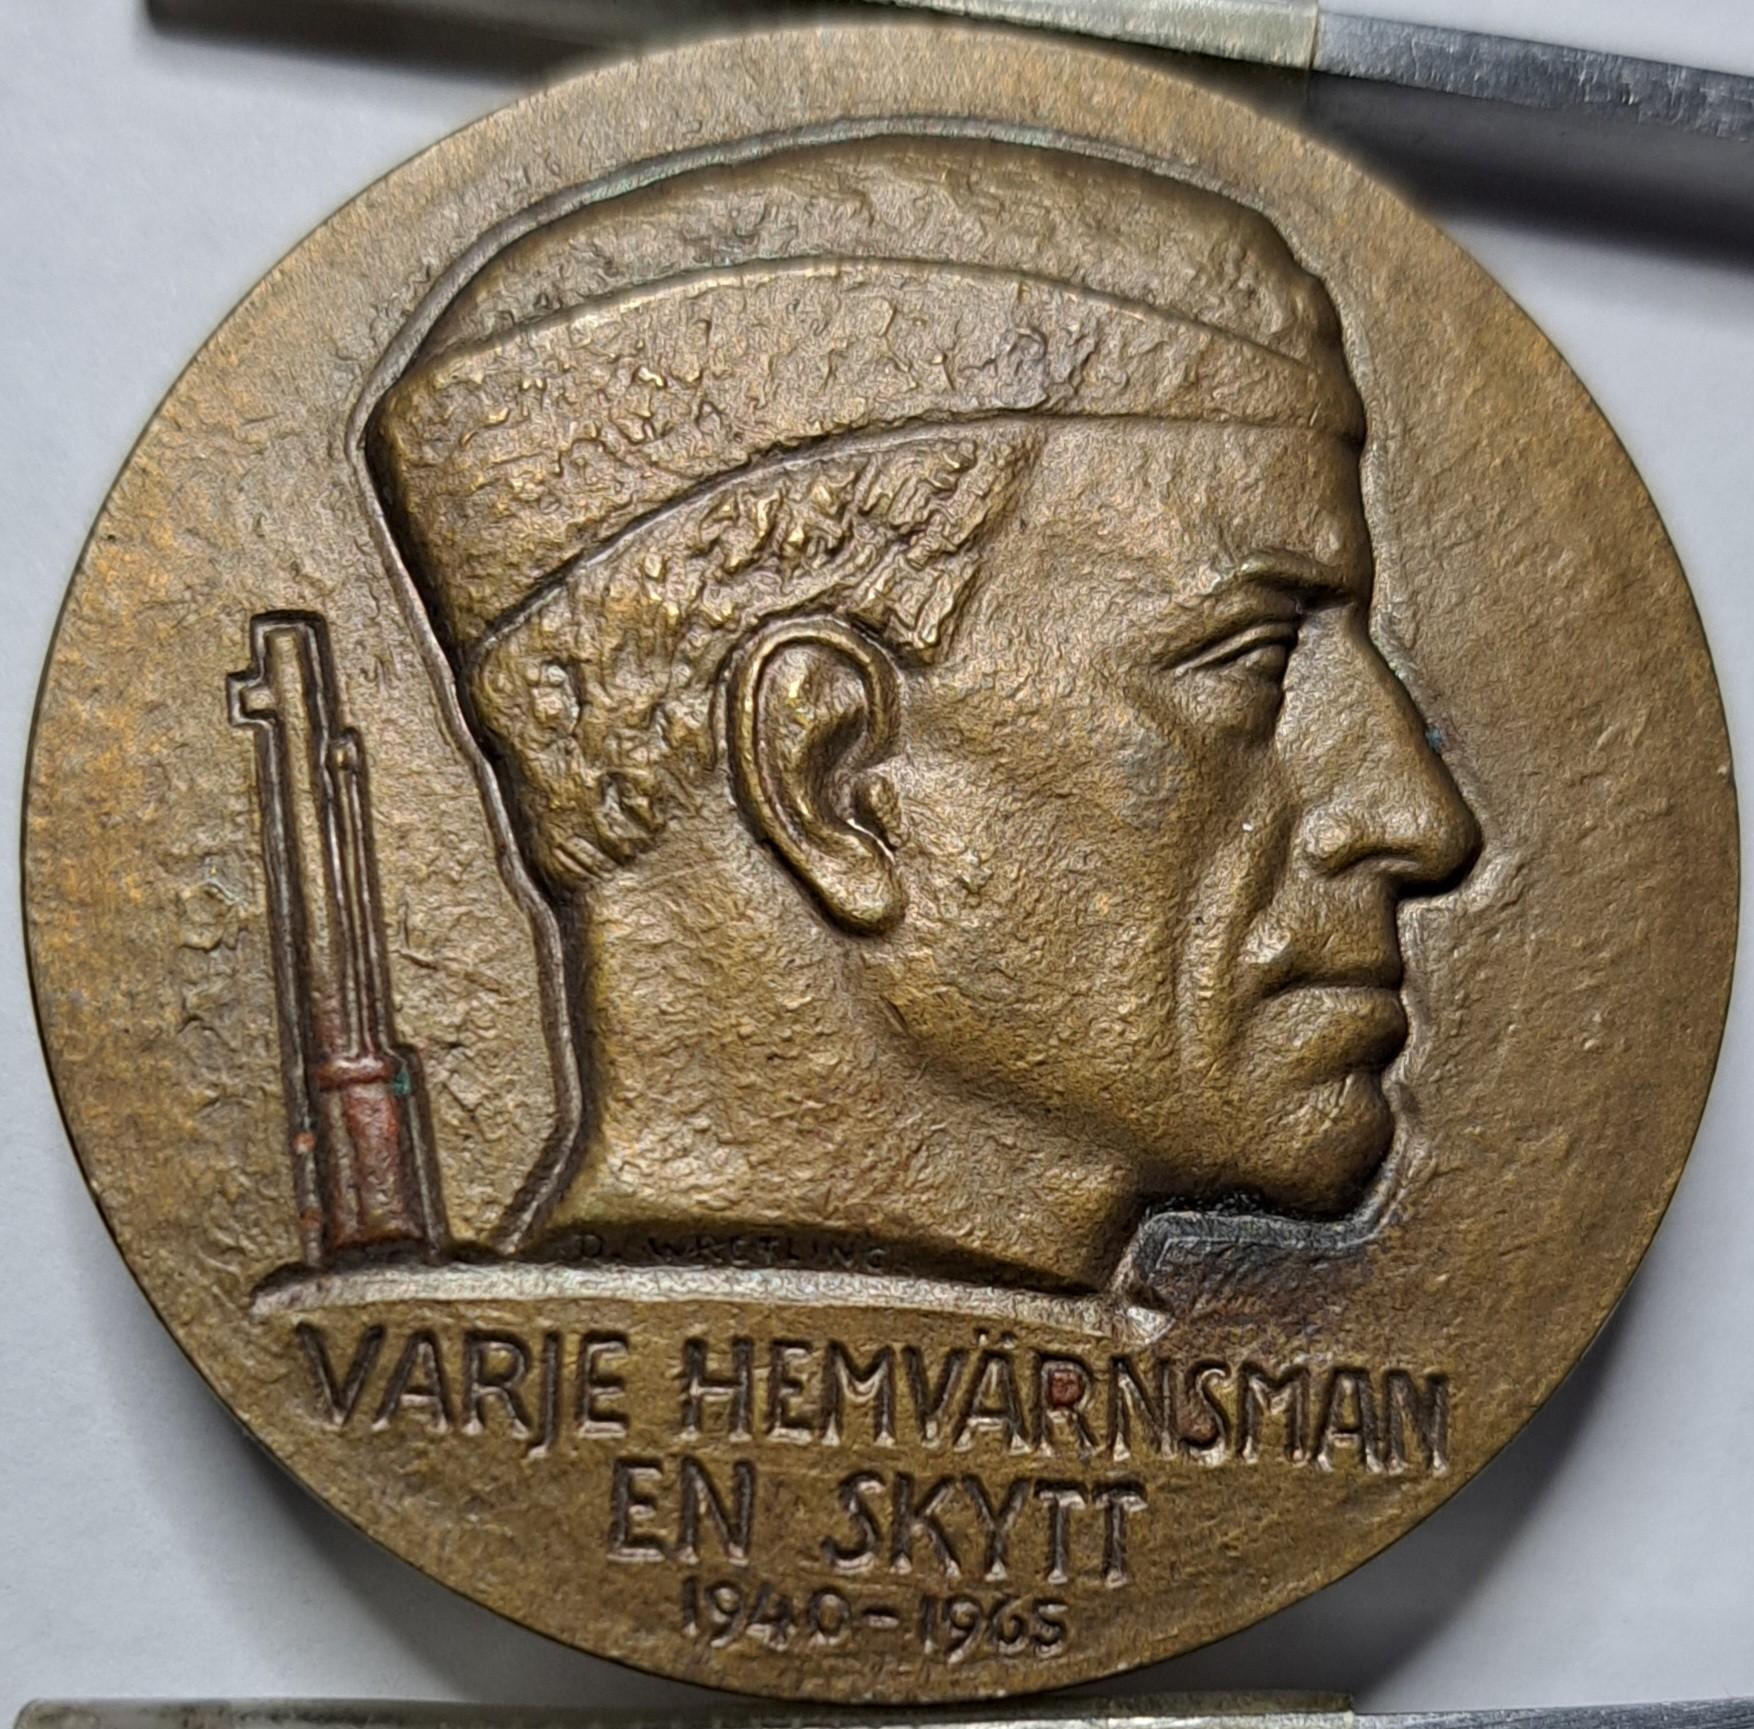 Švedija medalis 1965 kiekvienas namu saugotojas šaulys (5503)